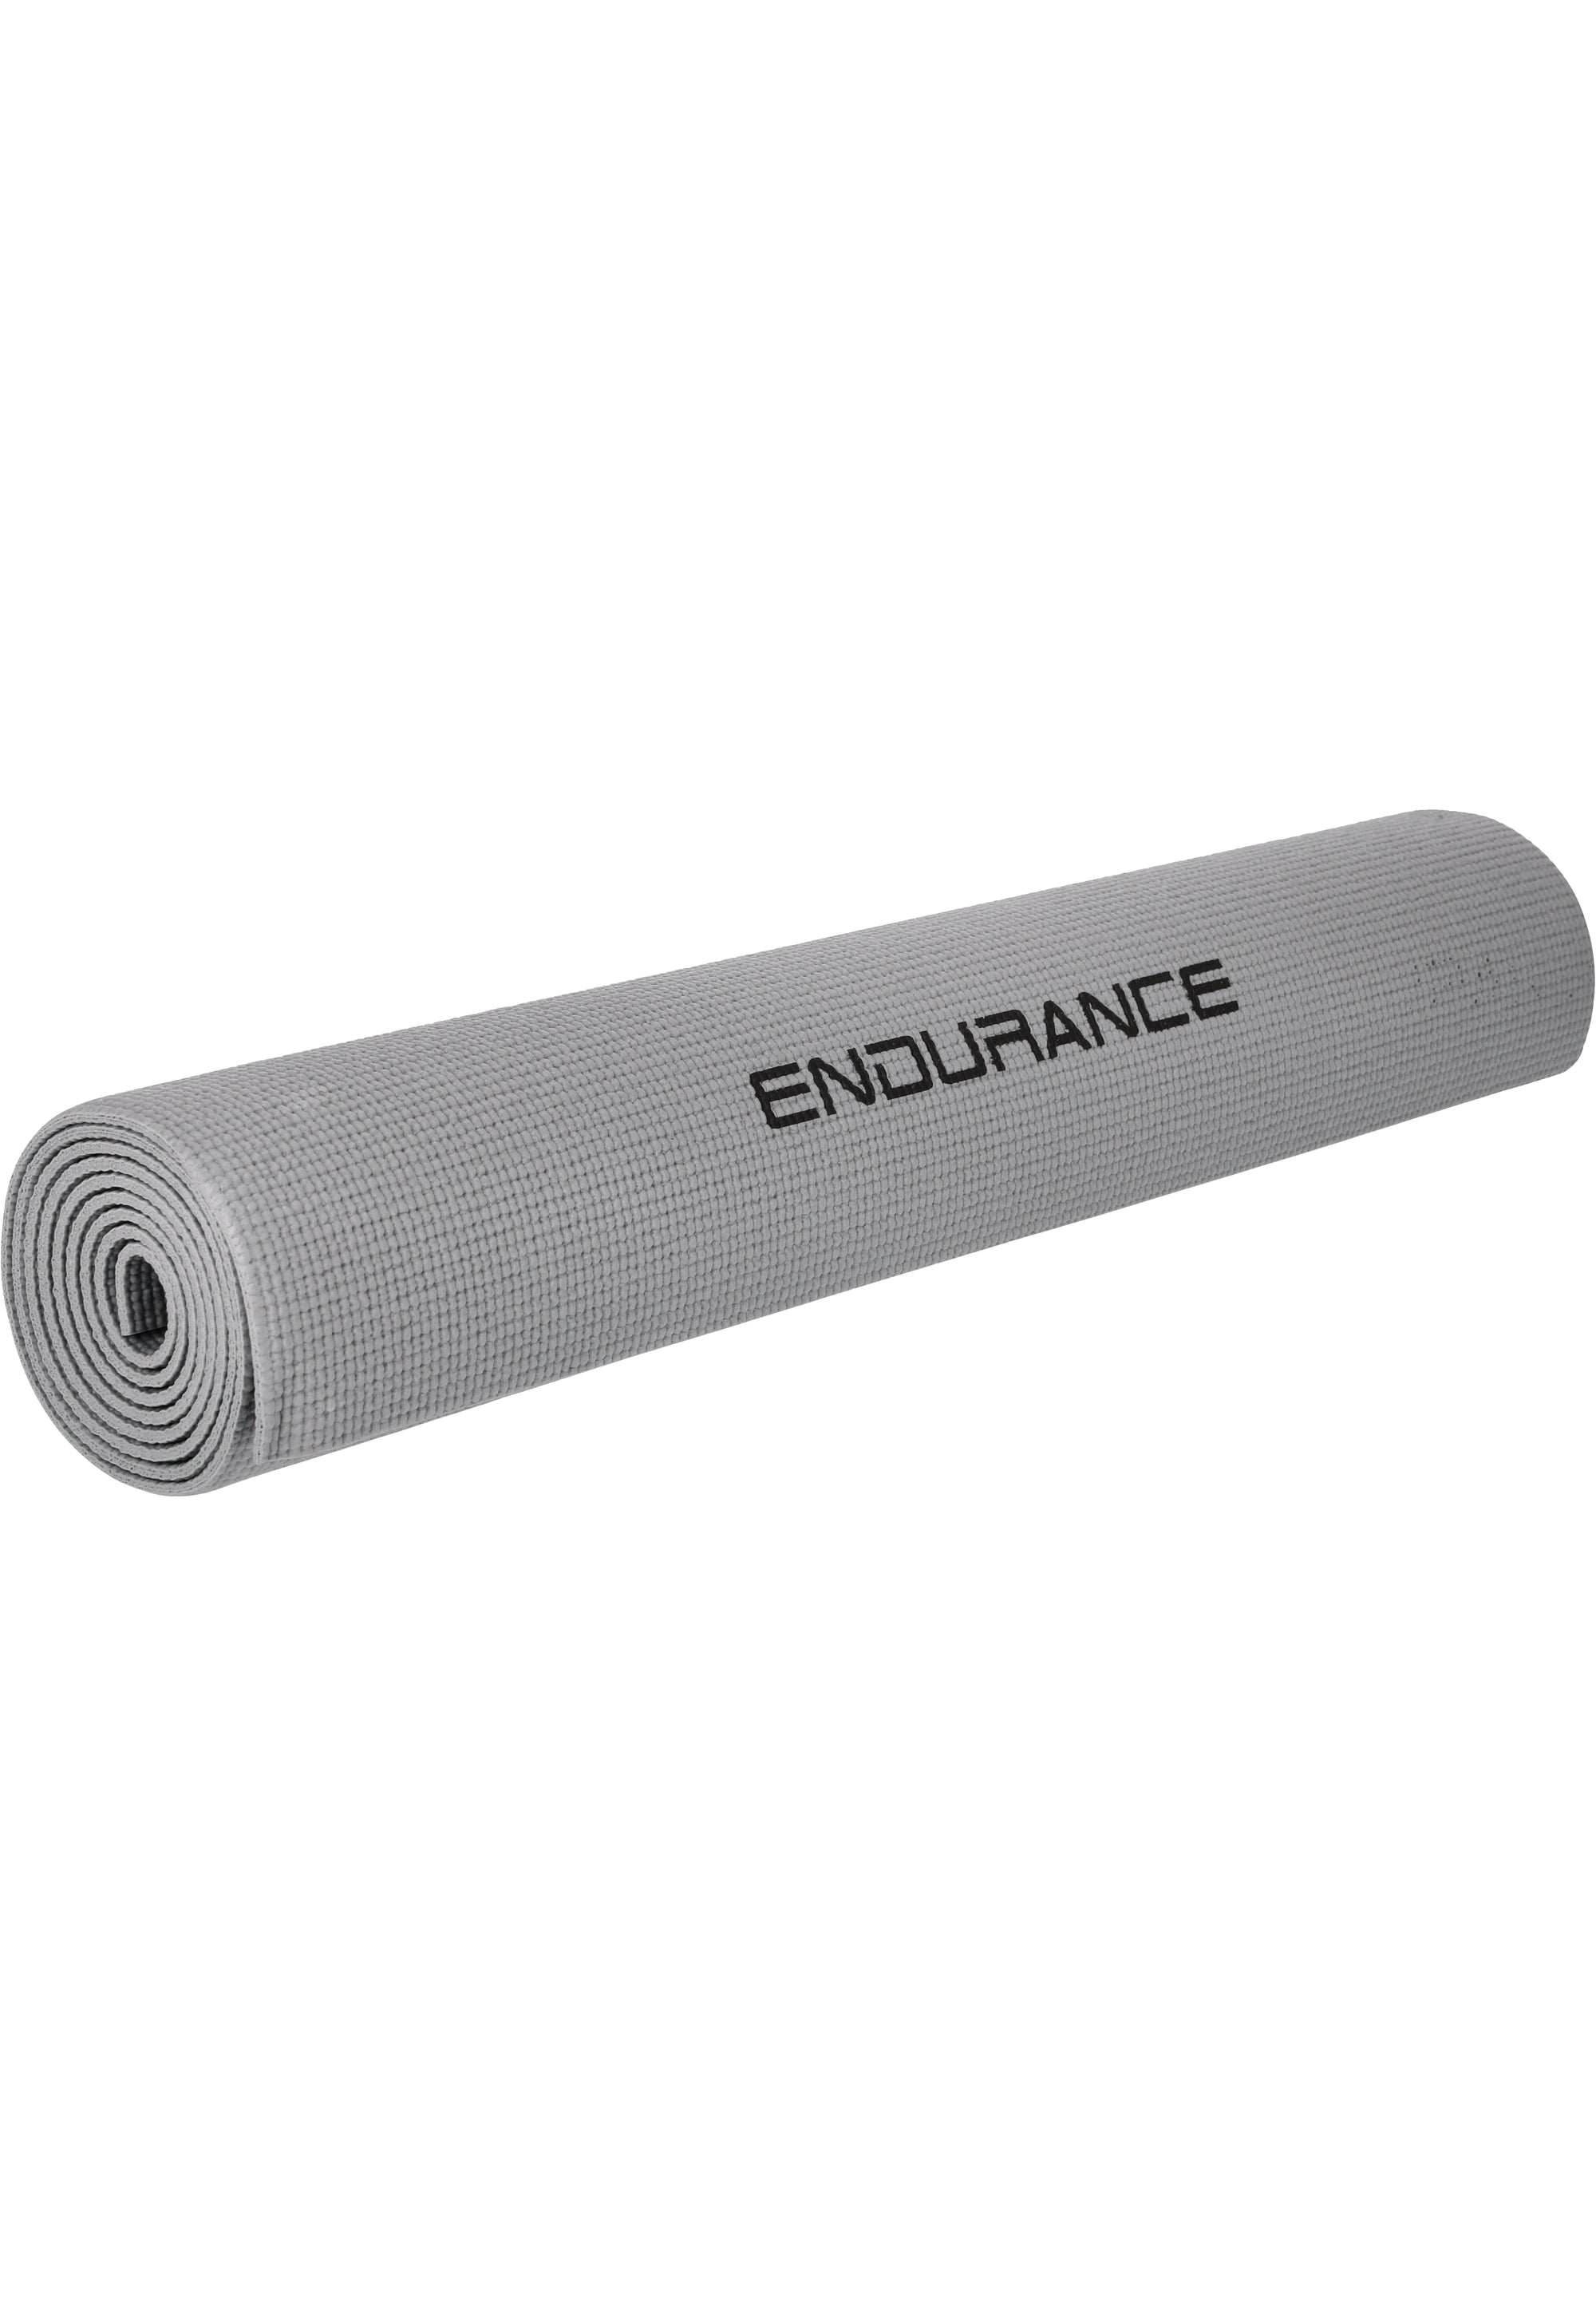 Endurance unisex Yoga - und Gymnastikmatte 173 cm x 61 cm Stärke  4 mm E97501